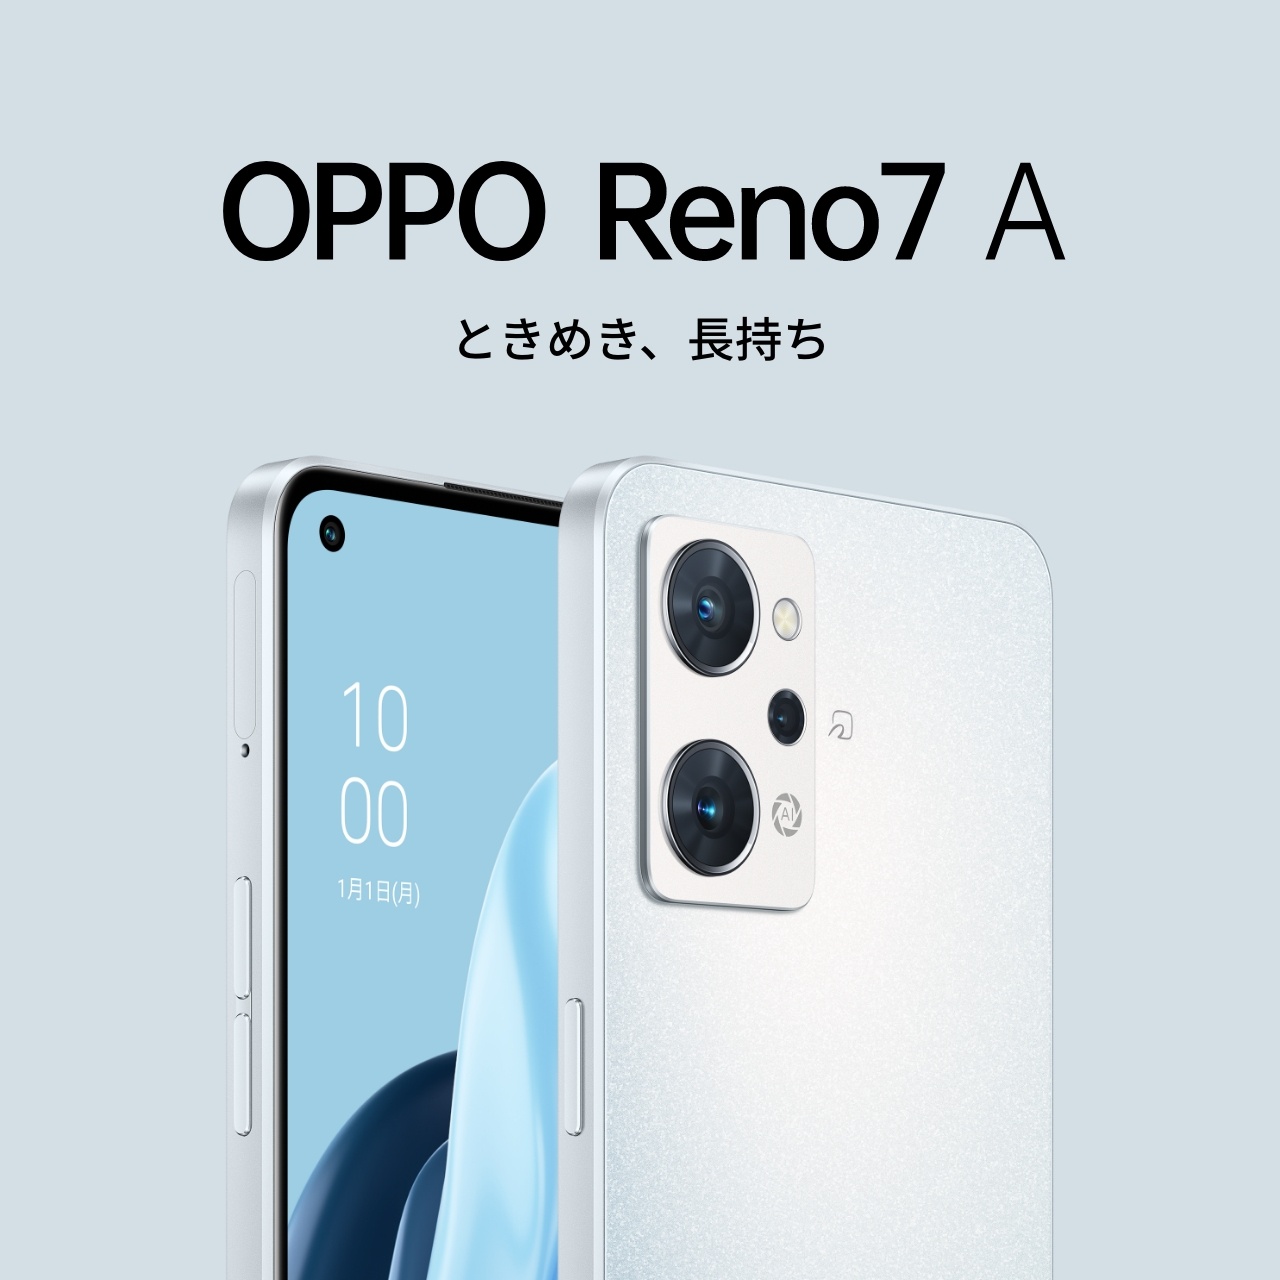 OPPO Reno7 A【SIMFREE】 | スマートフォン | OPPO公式